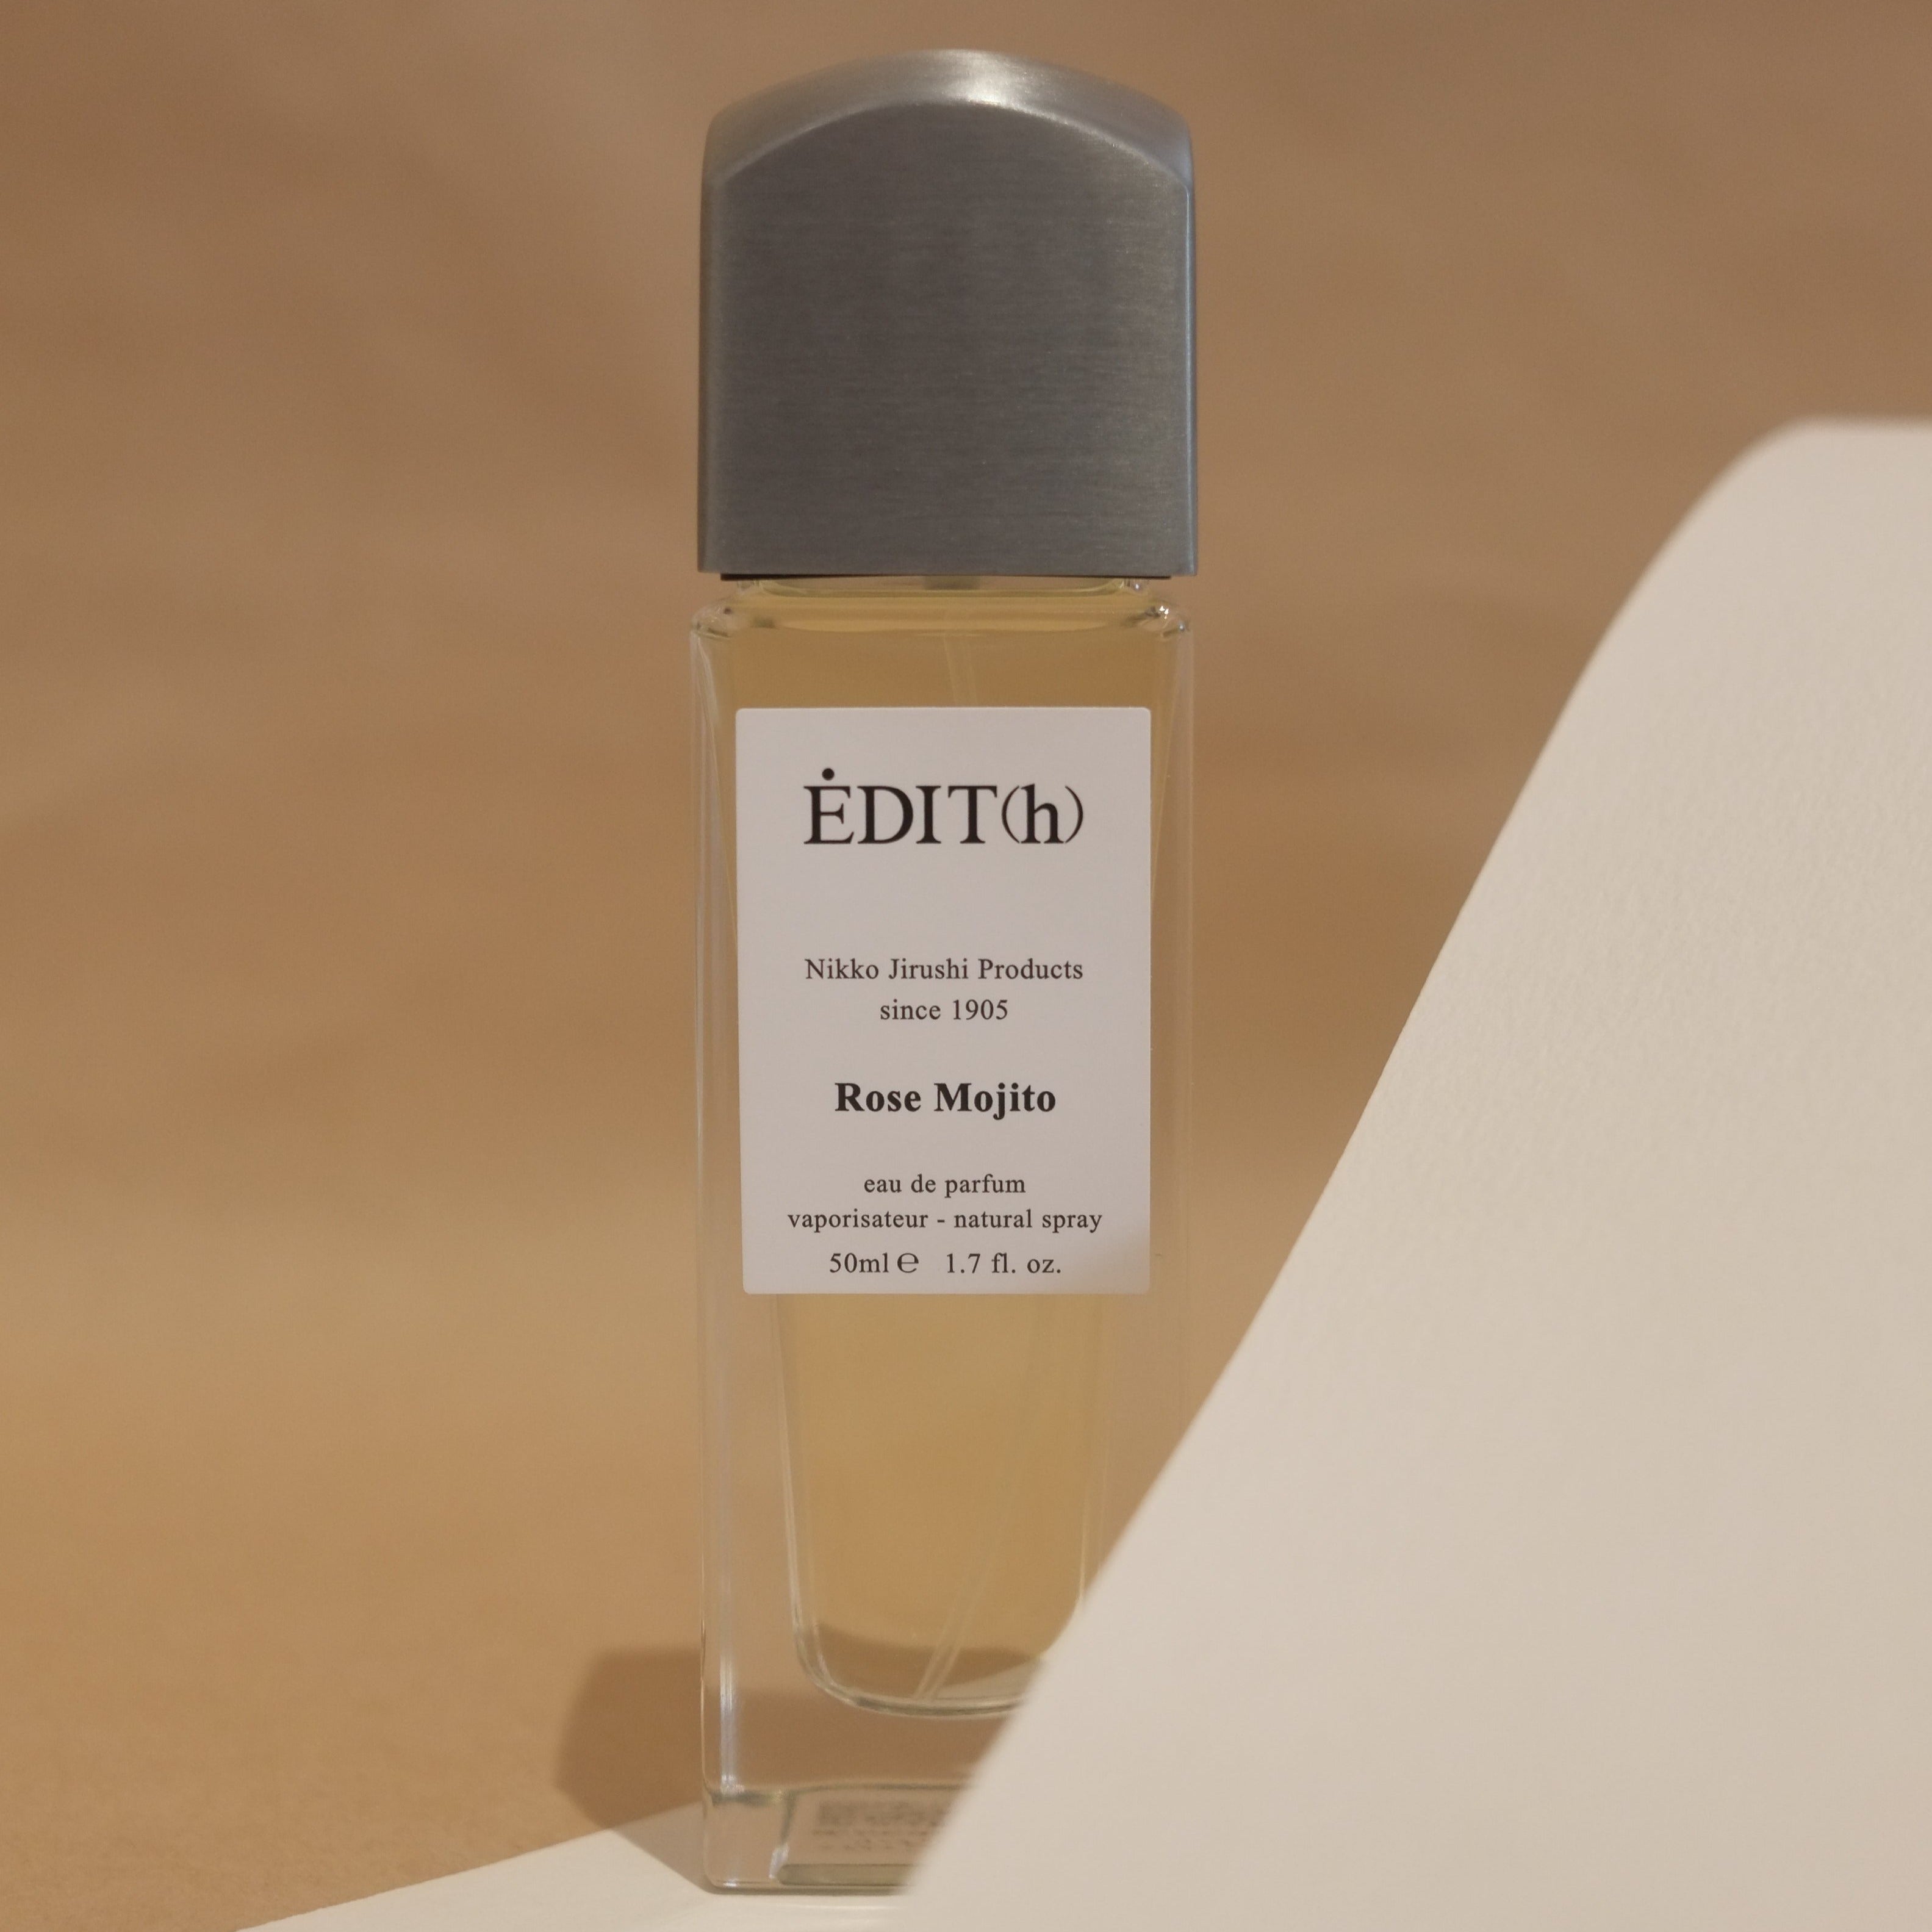 ÉDIT(h) – Normcore Fragrance